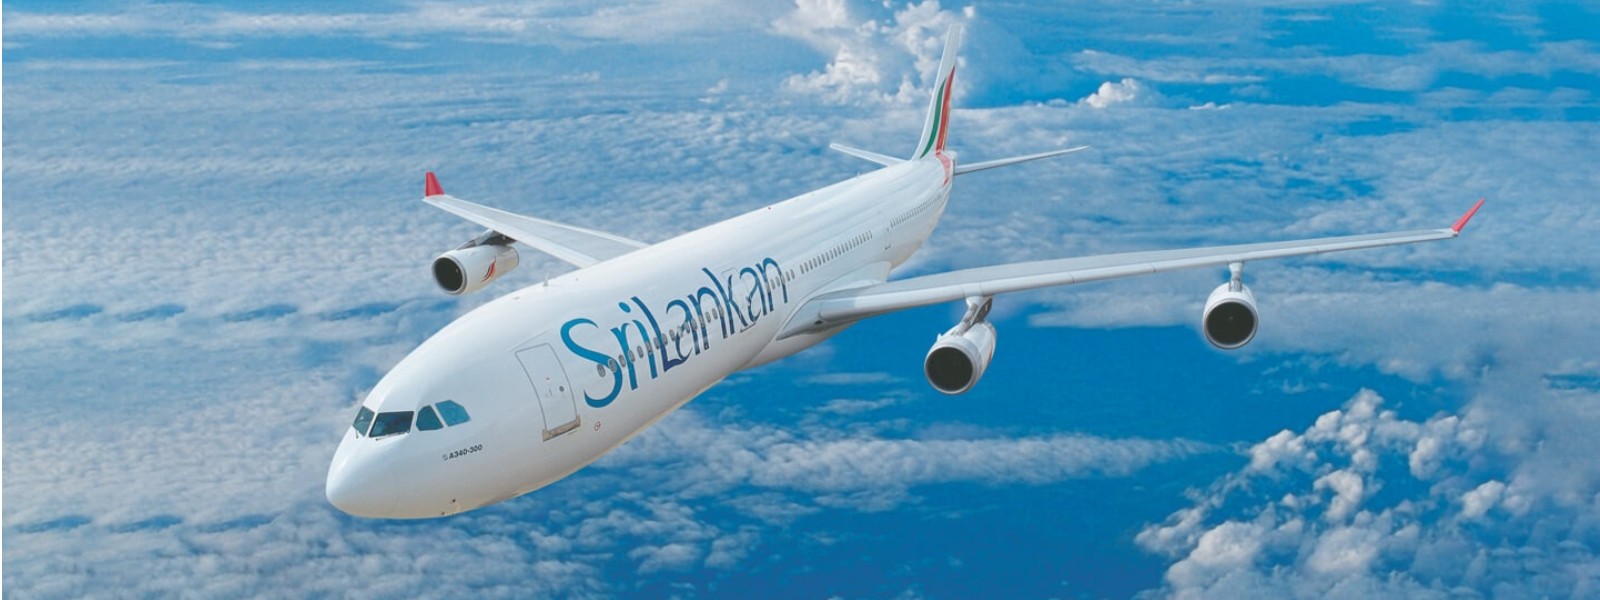 FLIGHTS ALLOCATED TO REPATRIATE 66,000 SRI LANKANS